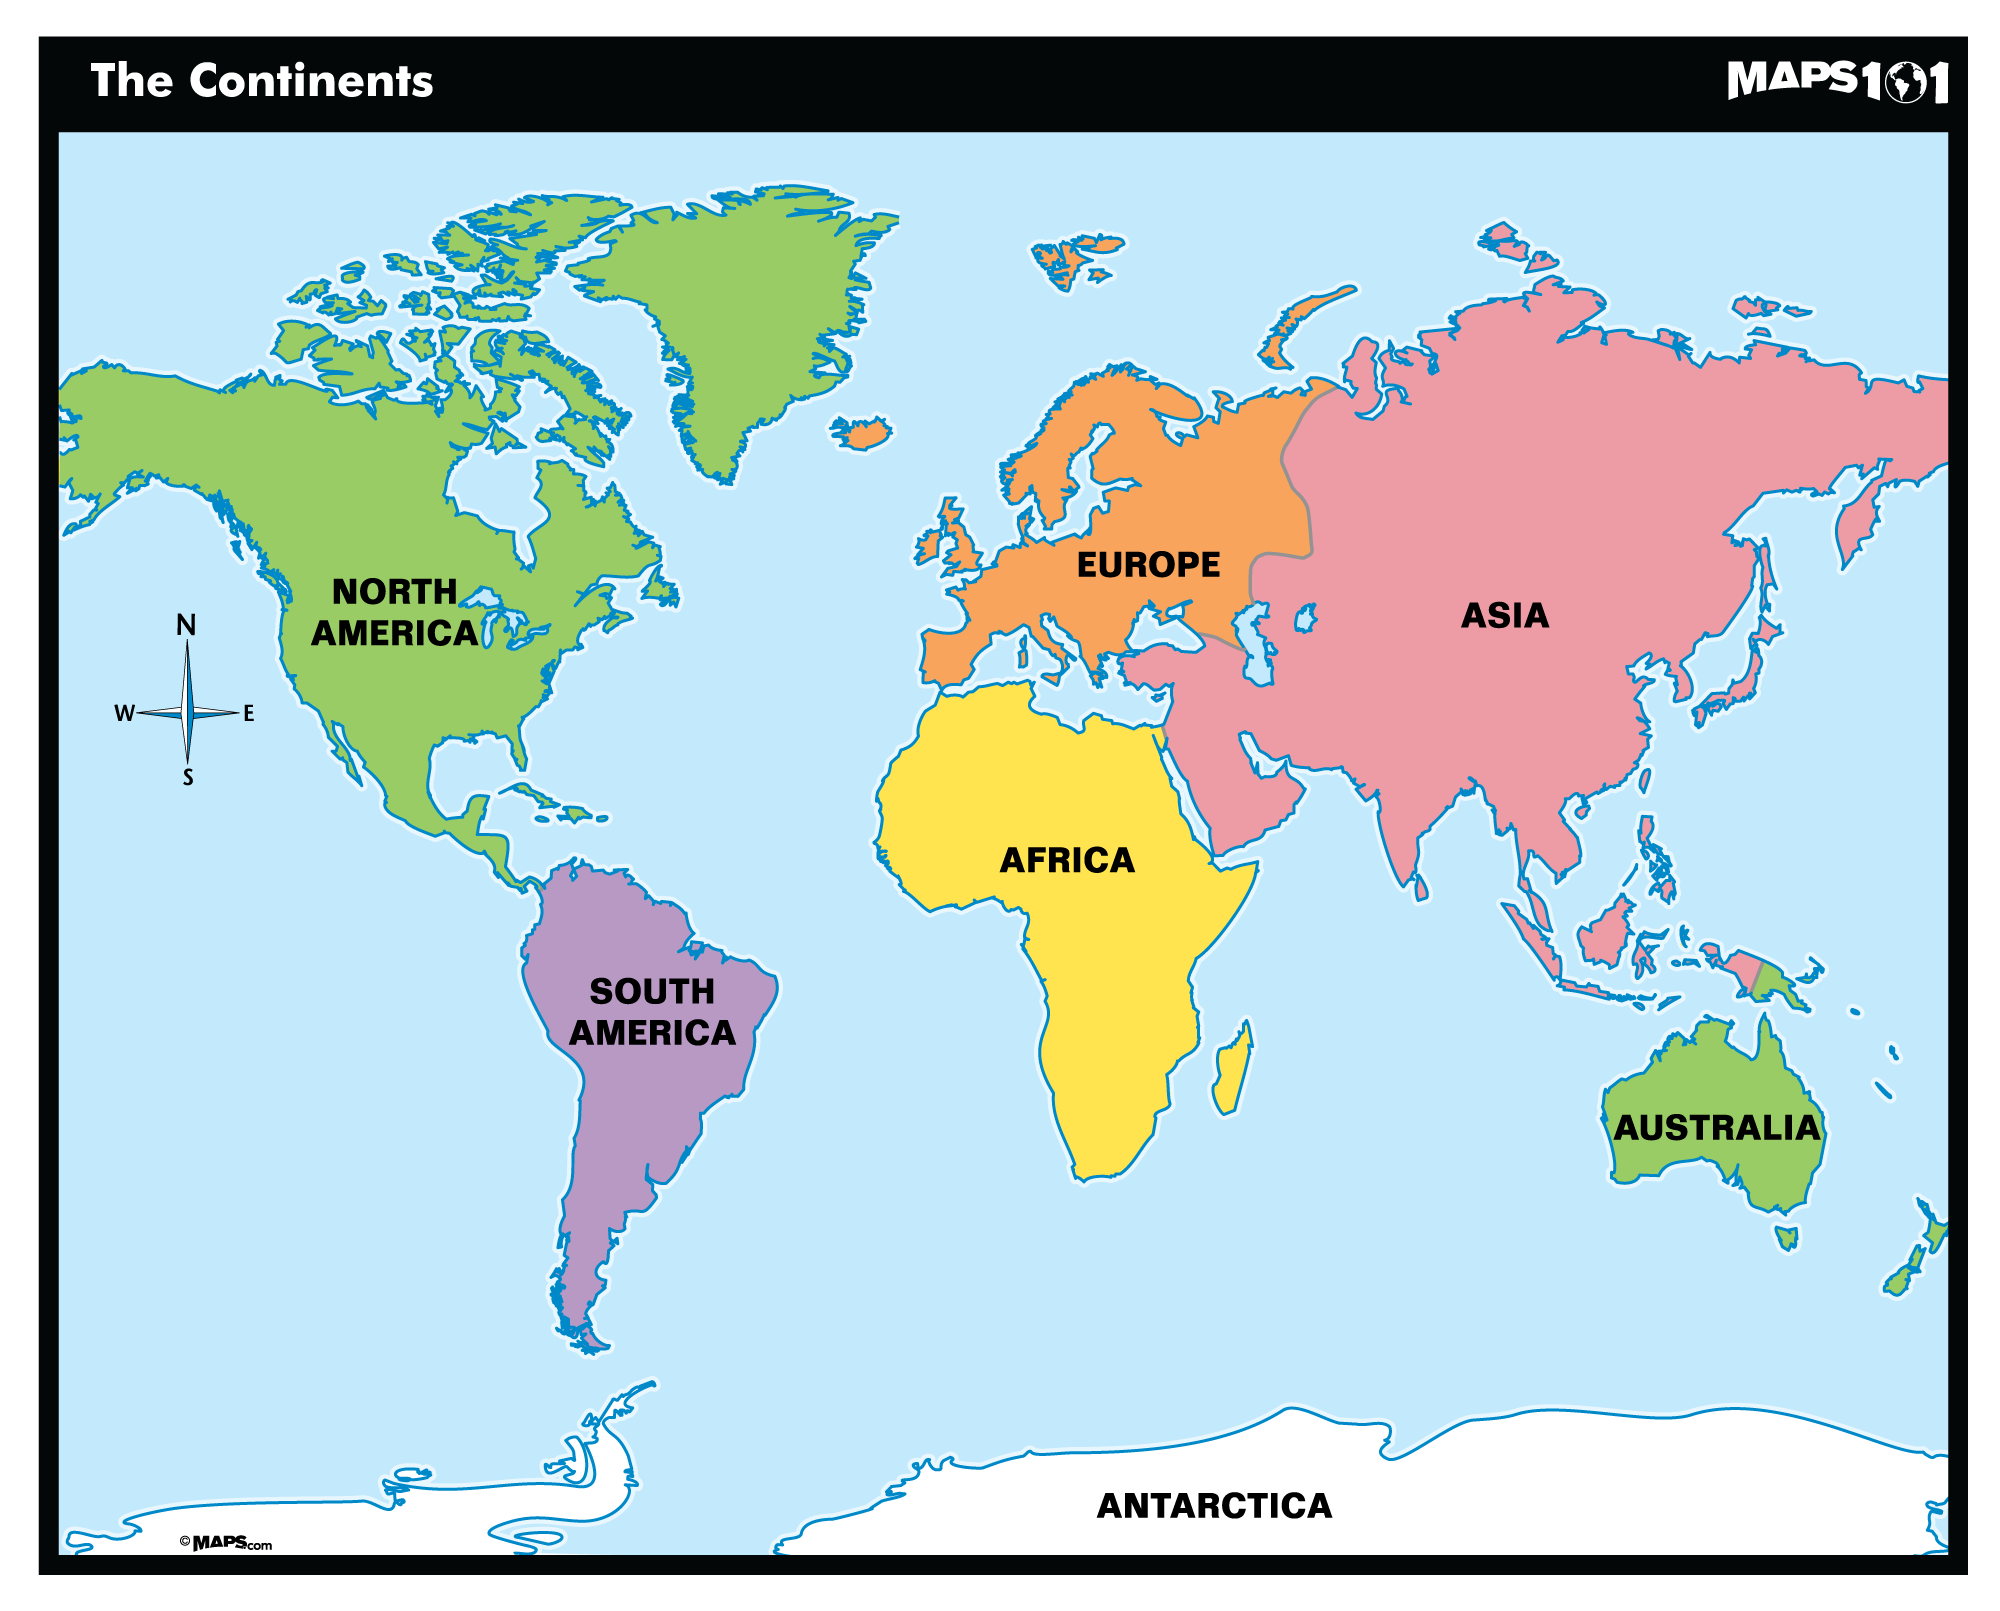 World Map Primary Level | Maps.com.com